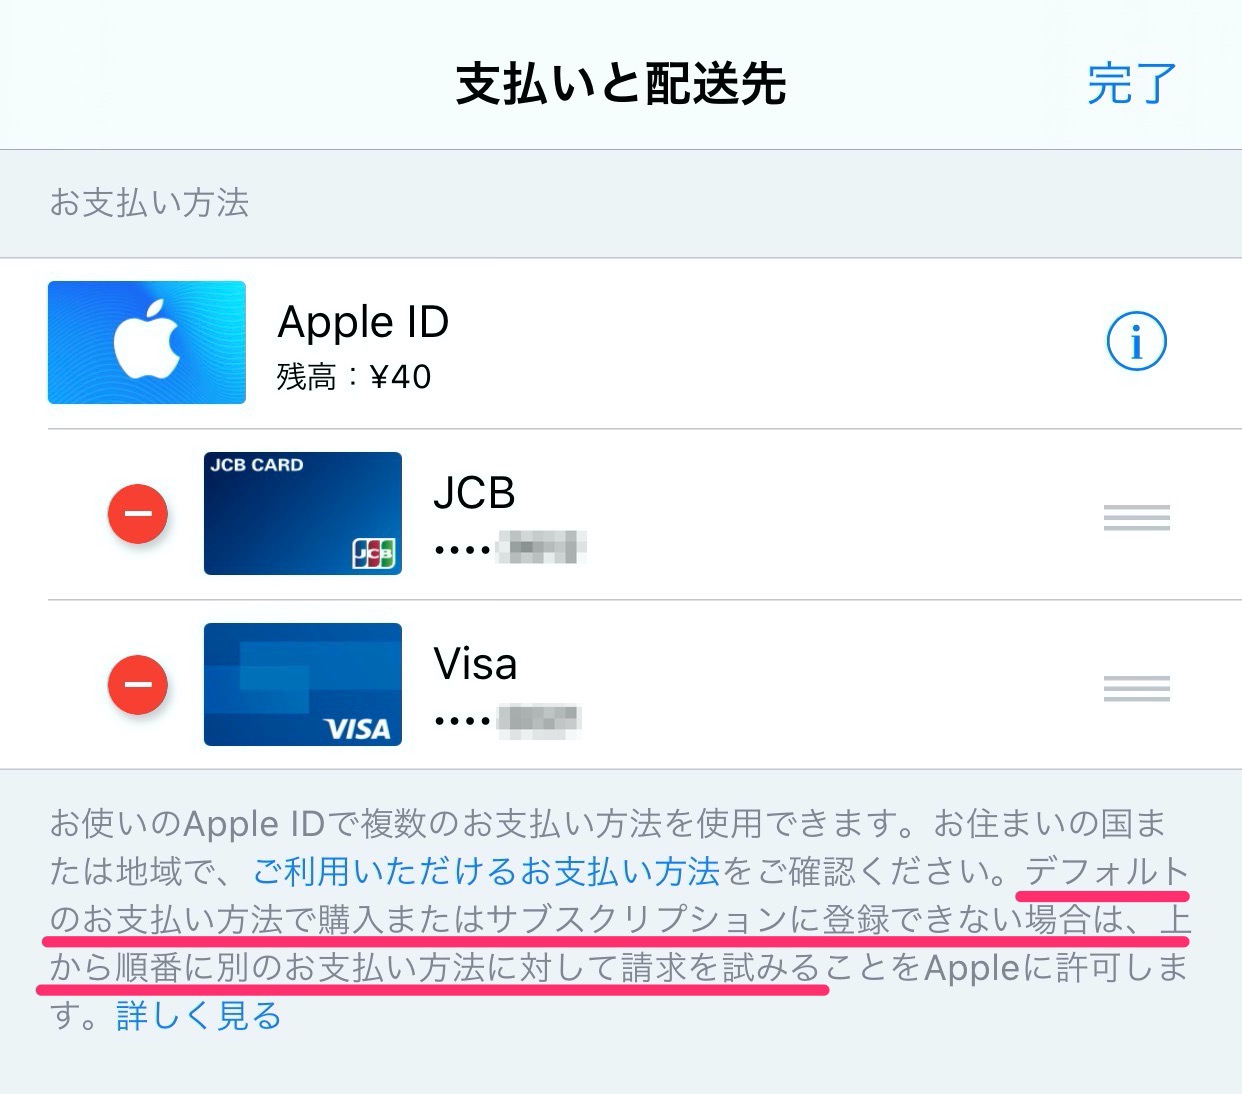 【Kyash】Apple IDの支払い方法に「Kyash Card」が登録できる